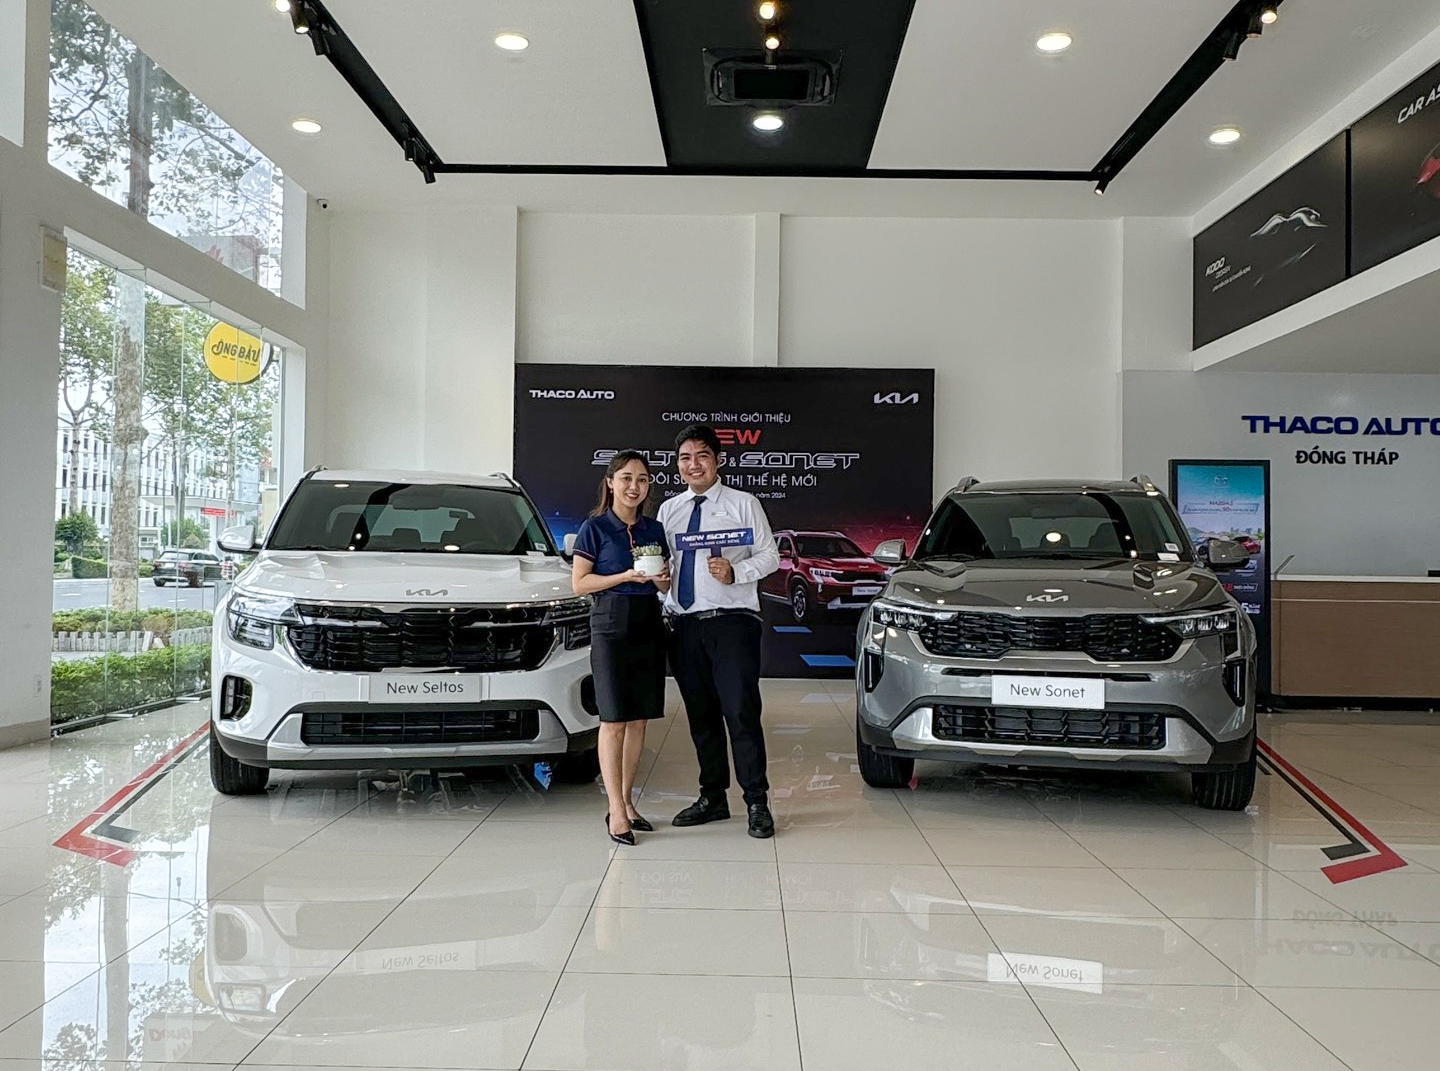 Khám phá bộ đôi SUV đô thị thế hệ mới New Seltos & New Sonet tại THACO AUTO Đồng Tháp